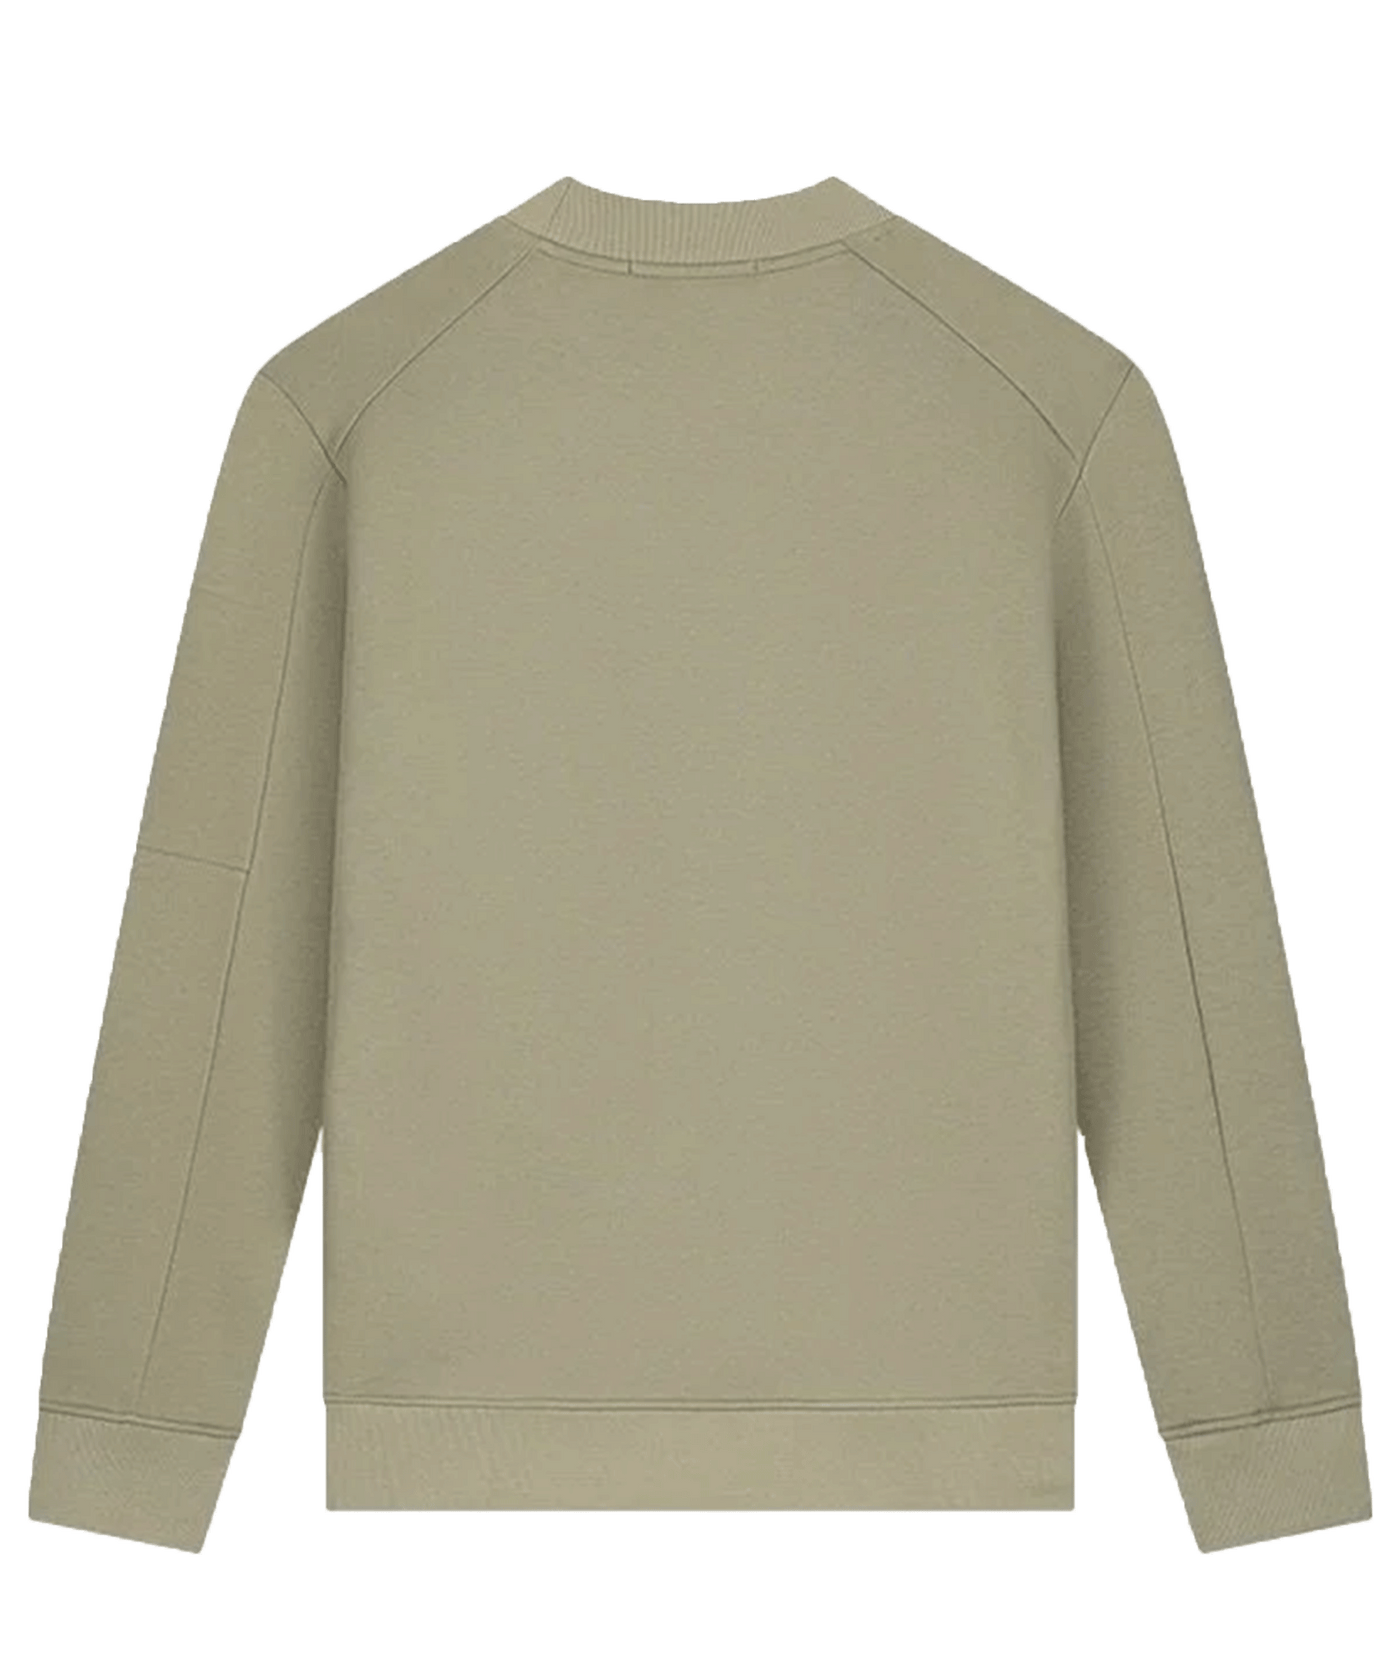 Malelions - Turtle - Sweater - Lt Green